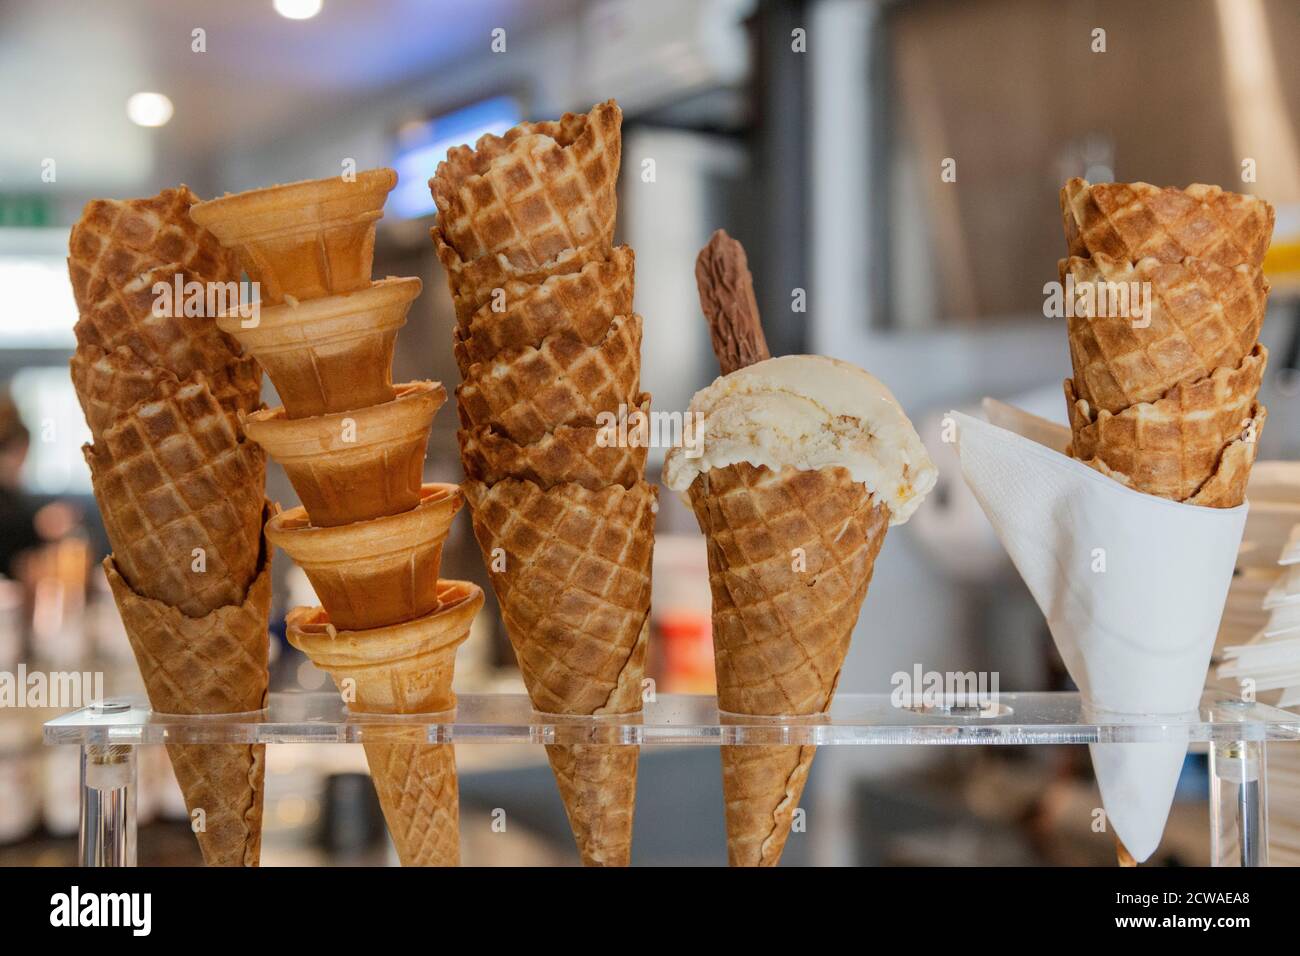 Ice cream cones in a plastic tray Stock Photo